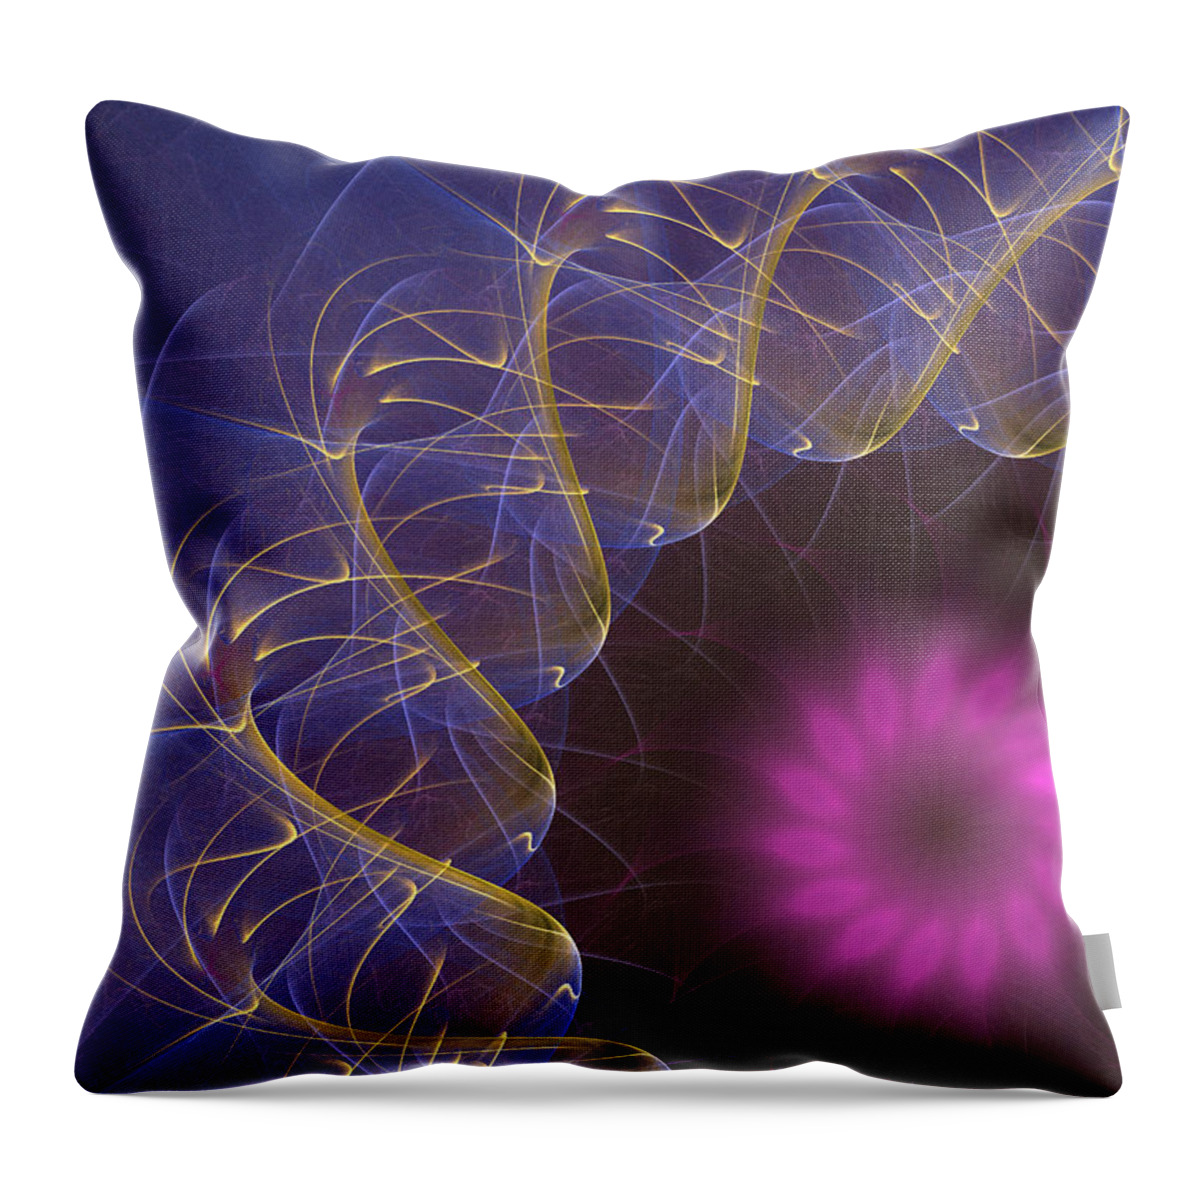 Mandala Throw Pillow featuring the digital art Golden Waves by Ricky Barnard